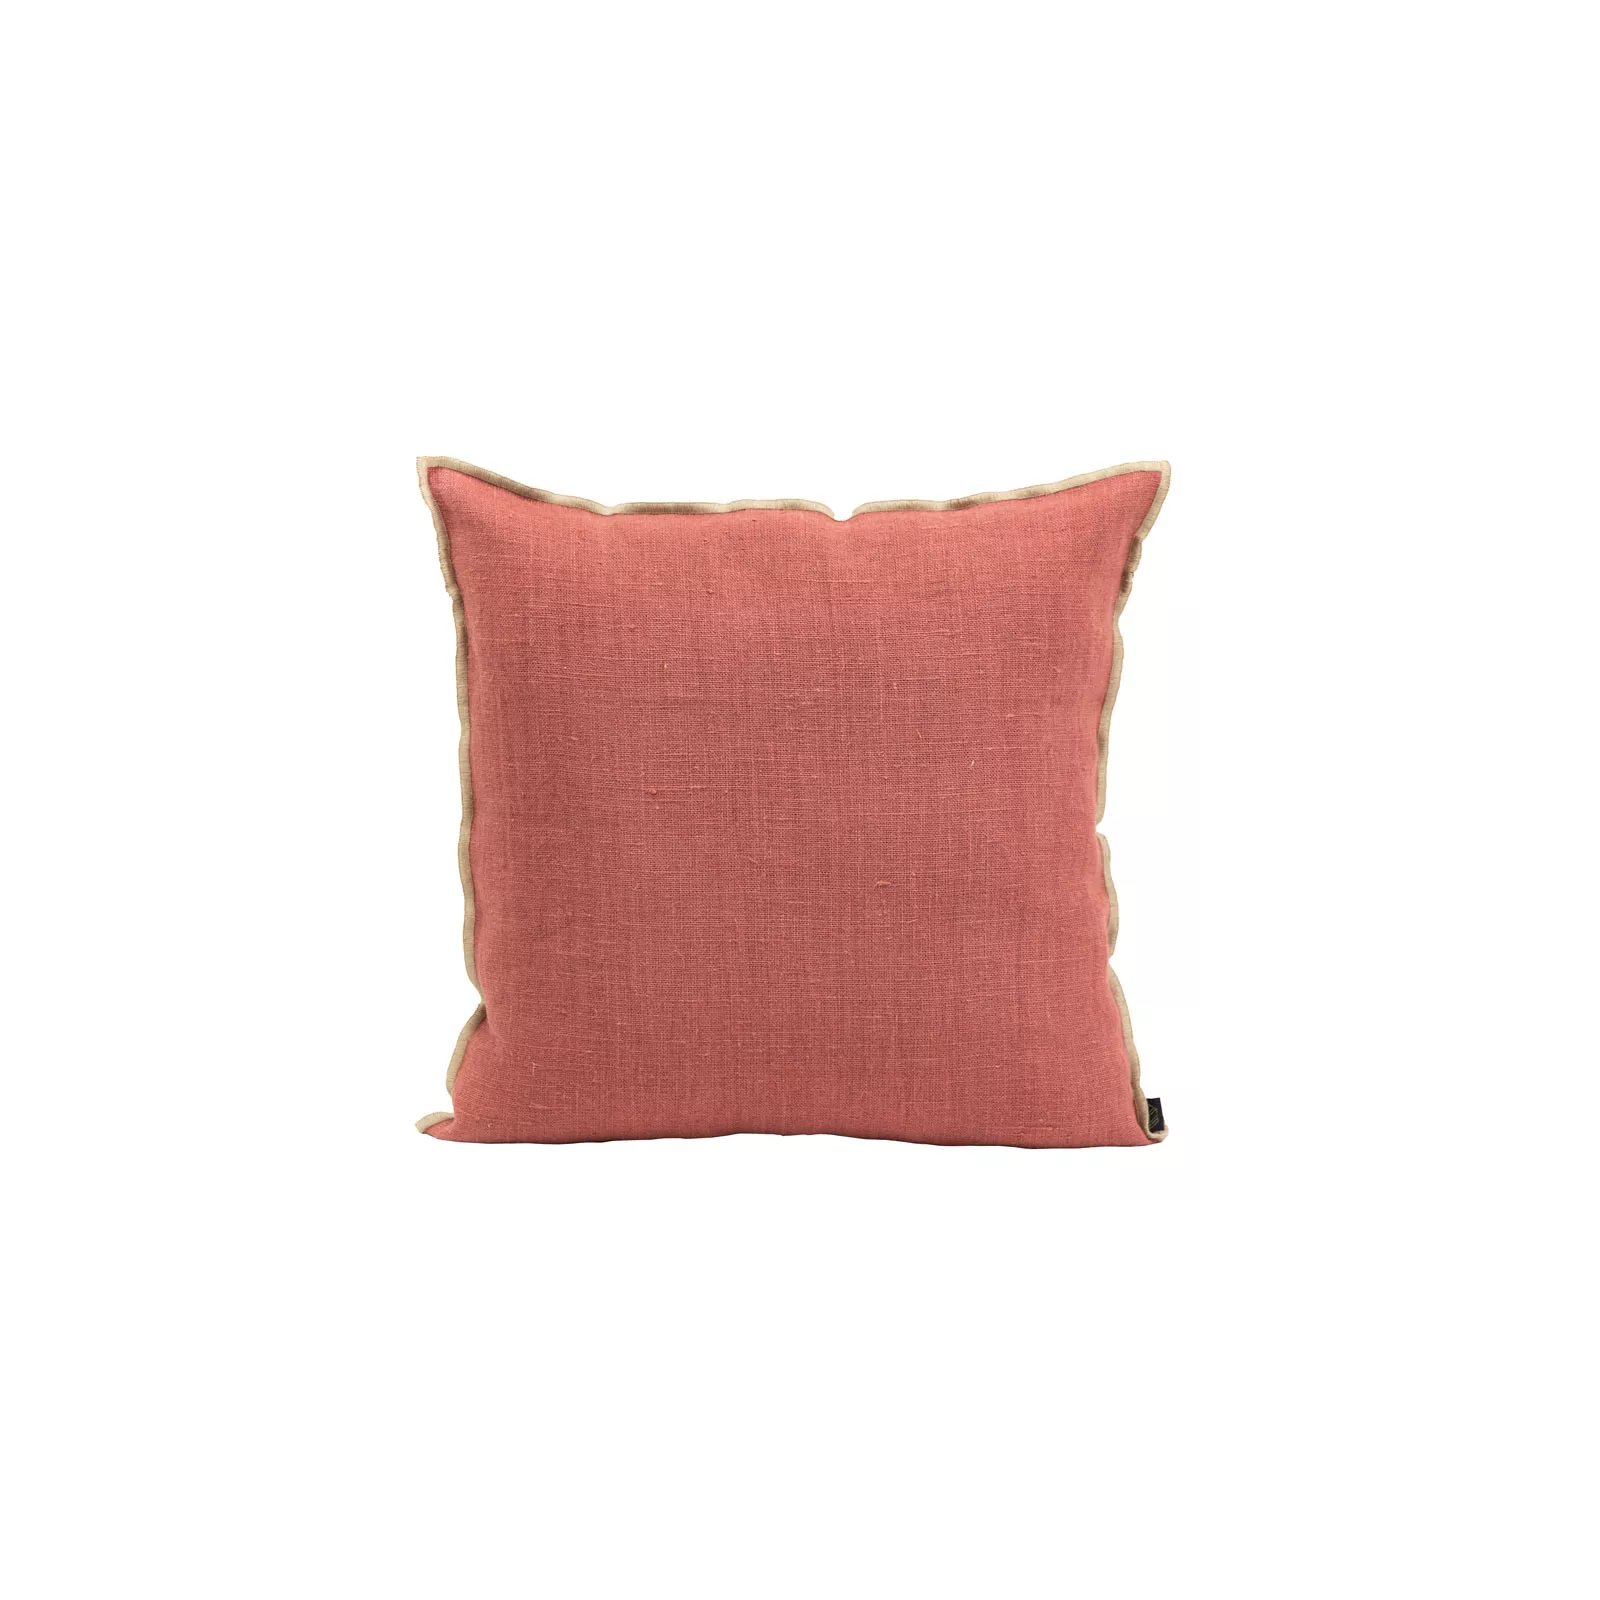 HOUSSE DE COUSSIN CHENNAI Dimension-45X45 Couleur-BOIS DE ROSE Composition-LIN - BOIS DE ROSE